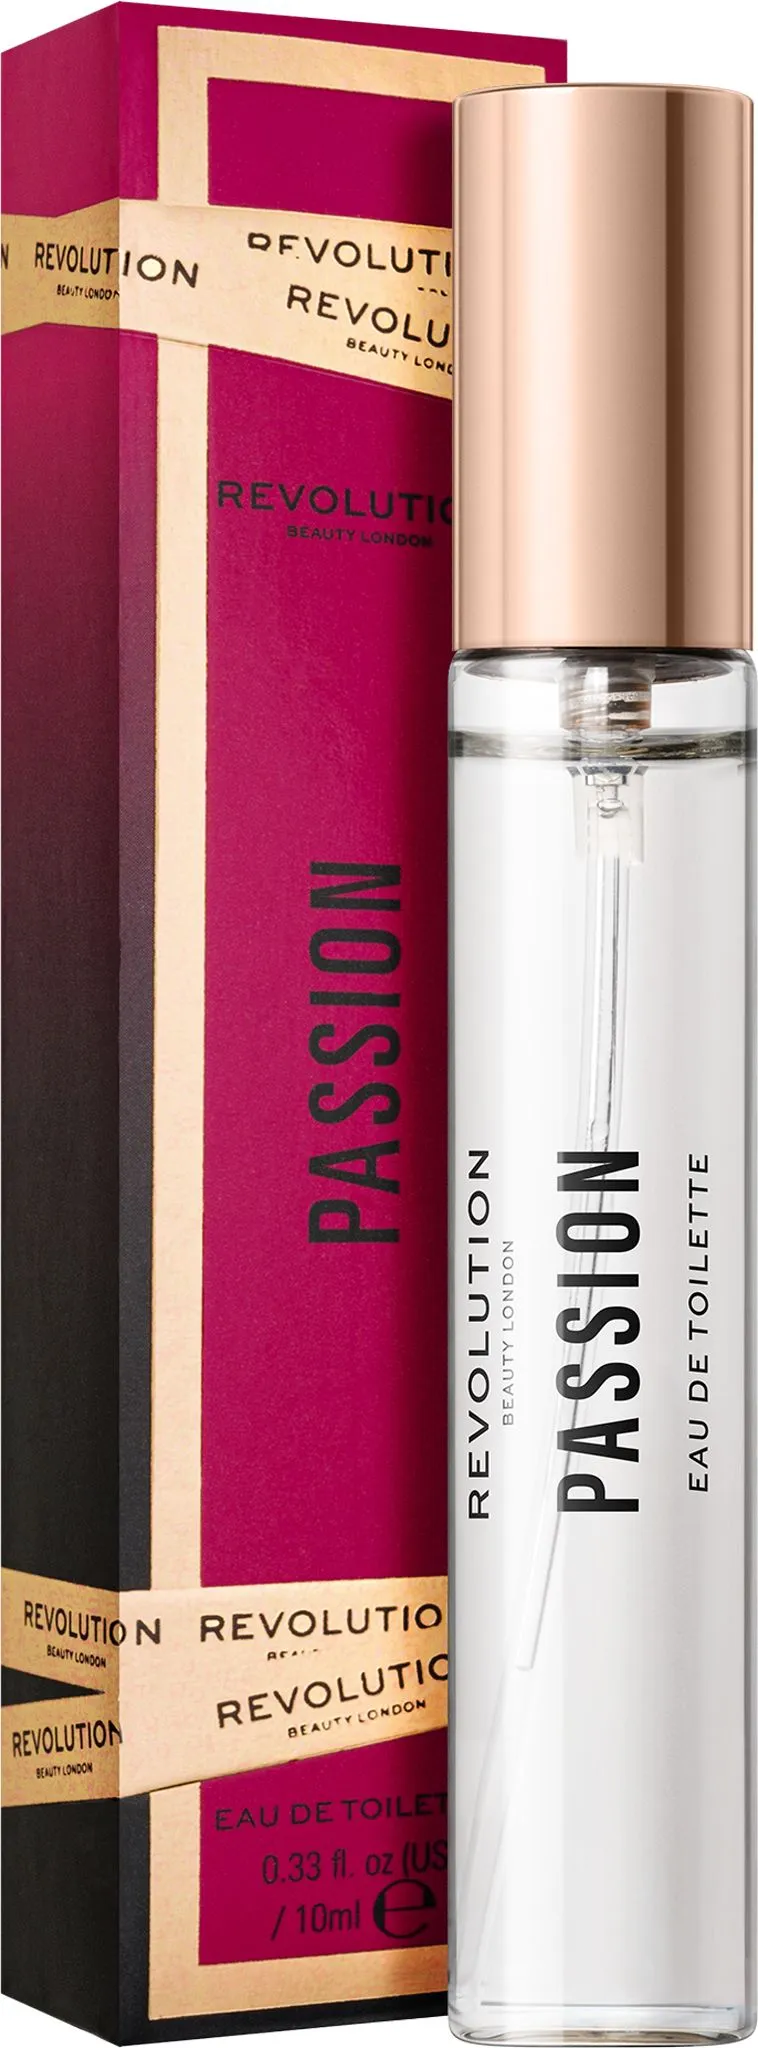 Revolution Passion Purse Spray 1×10 ml, dámska voňavka